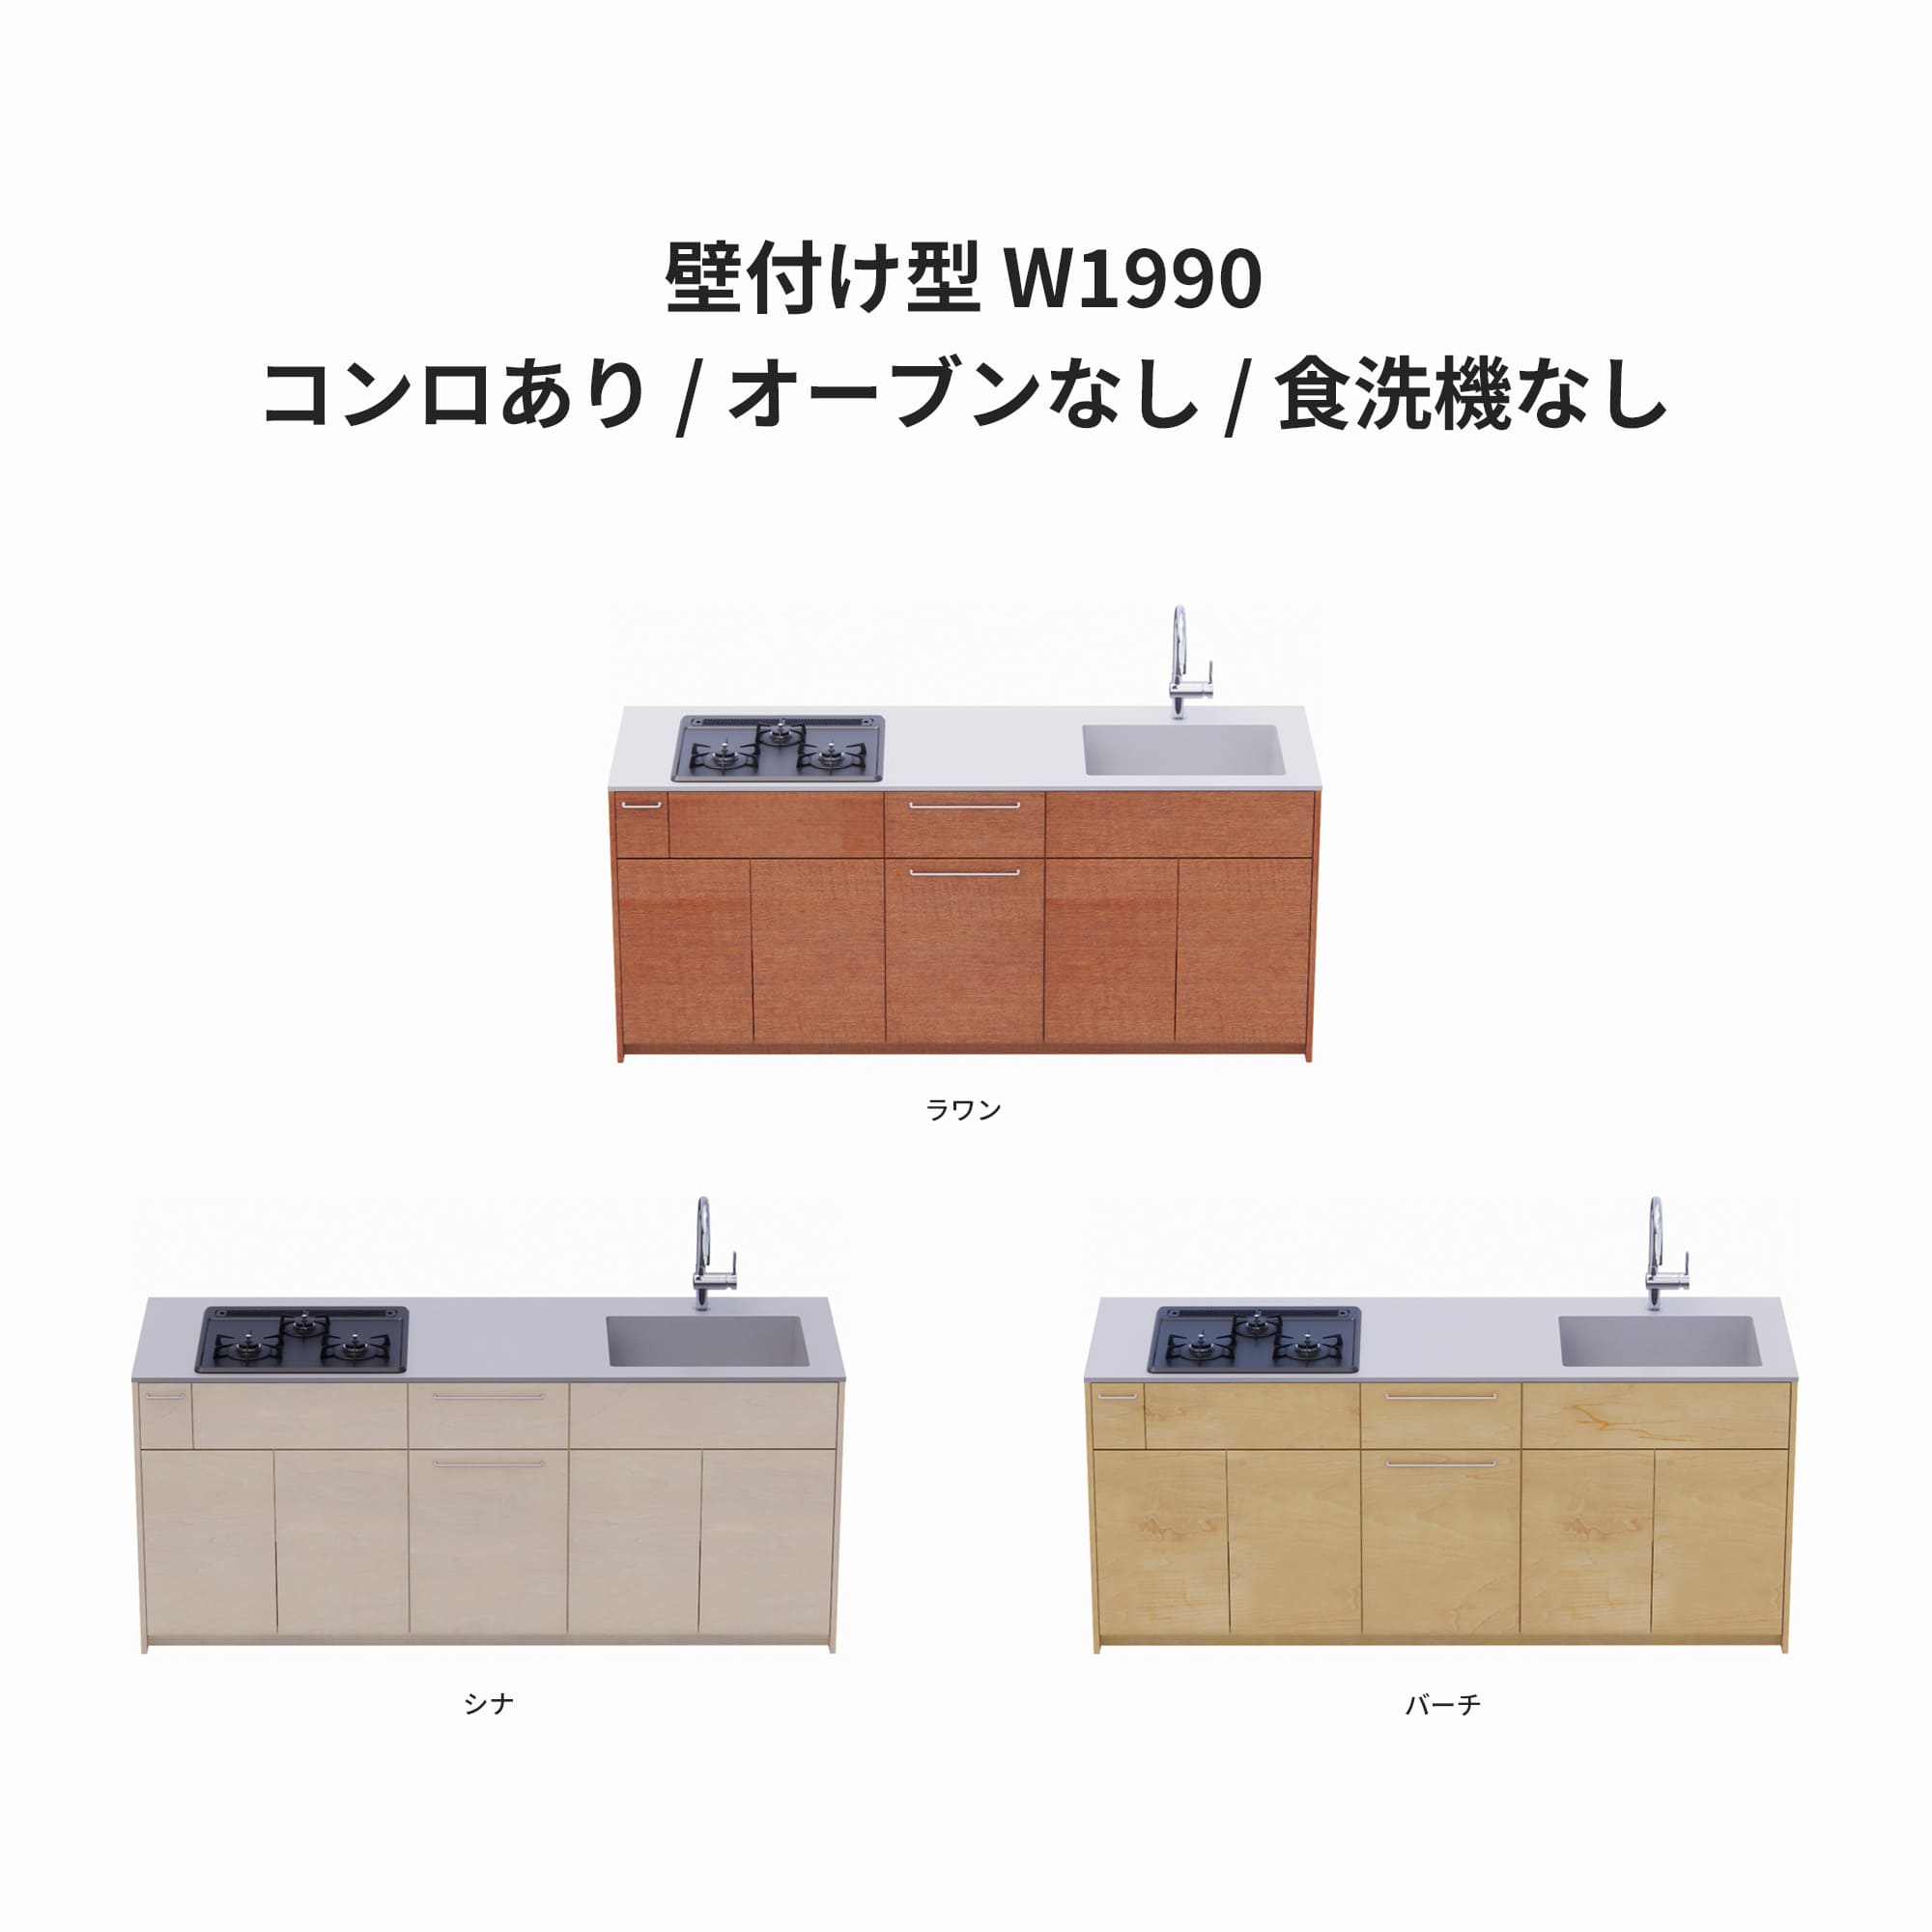 木製システムキッチン 壁付け型 W1990・コンロあり / オーブンなし / 食洗機なし KB-KC022-13-G183 ラワン・シナ・バーチが選択できます